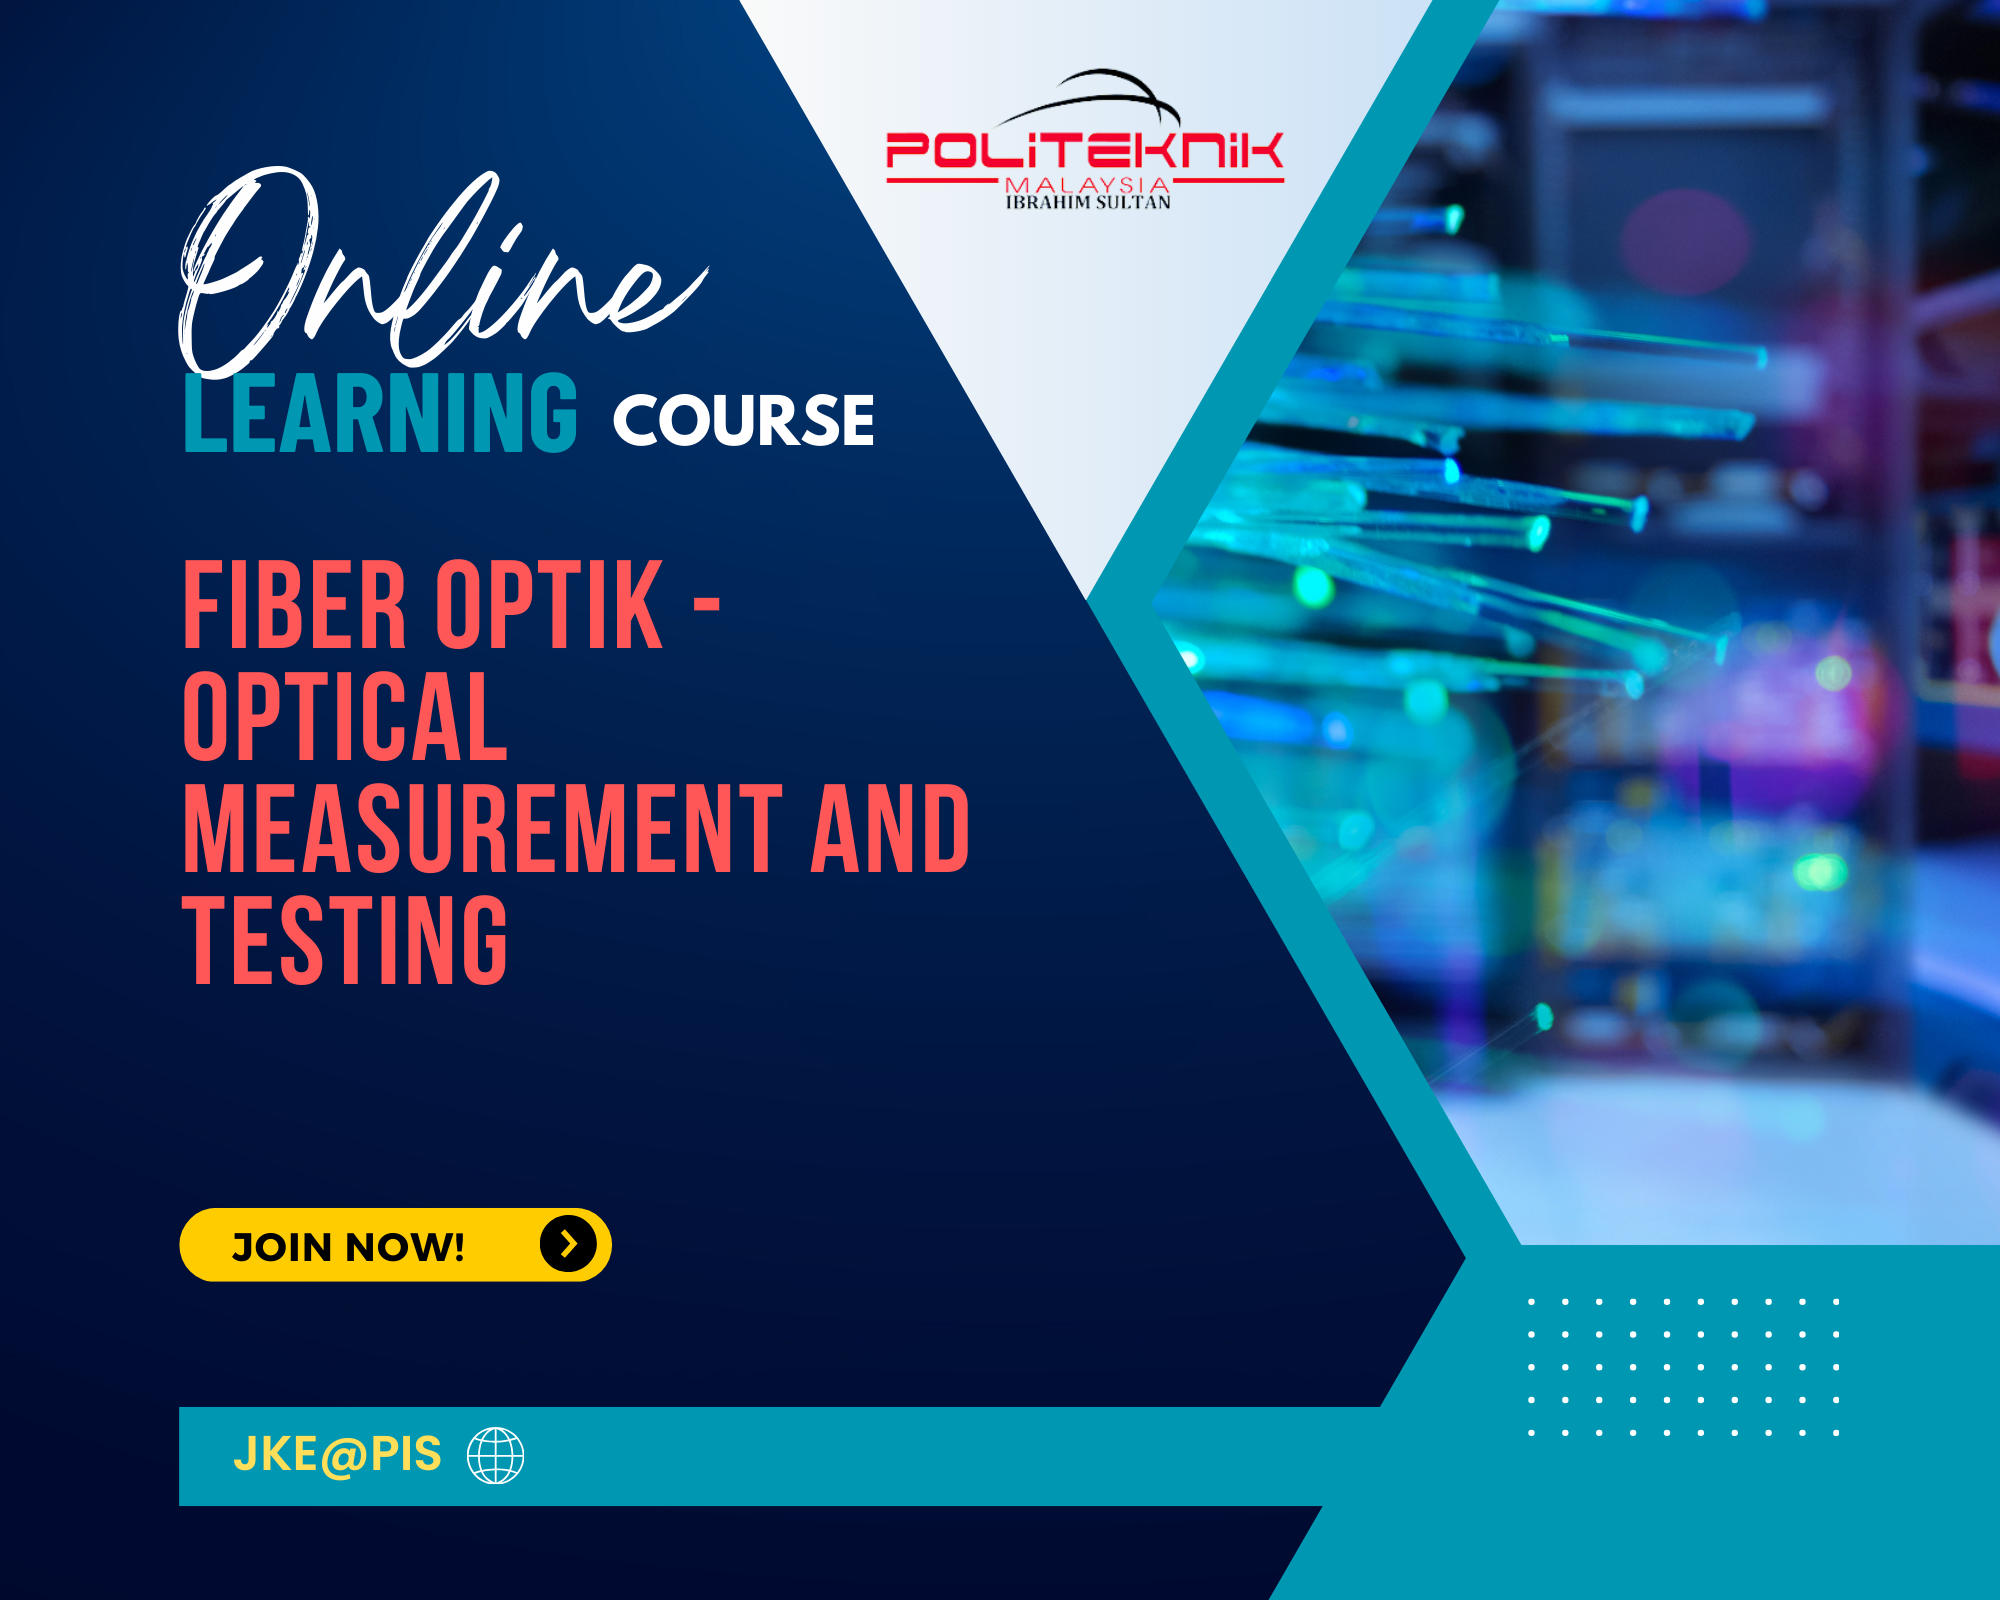 Fiber optik - Optical Measurement and Testing